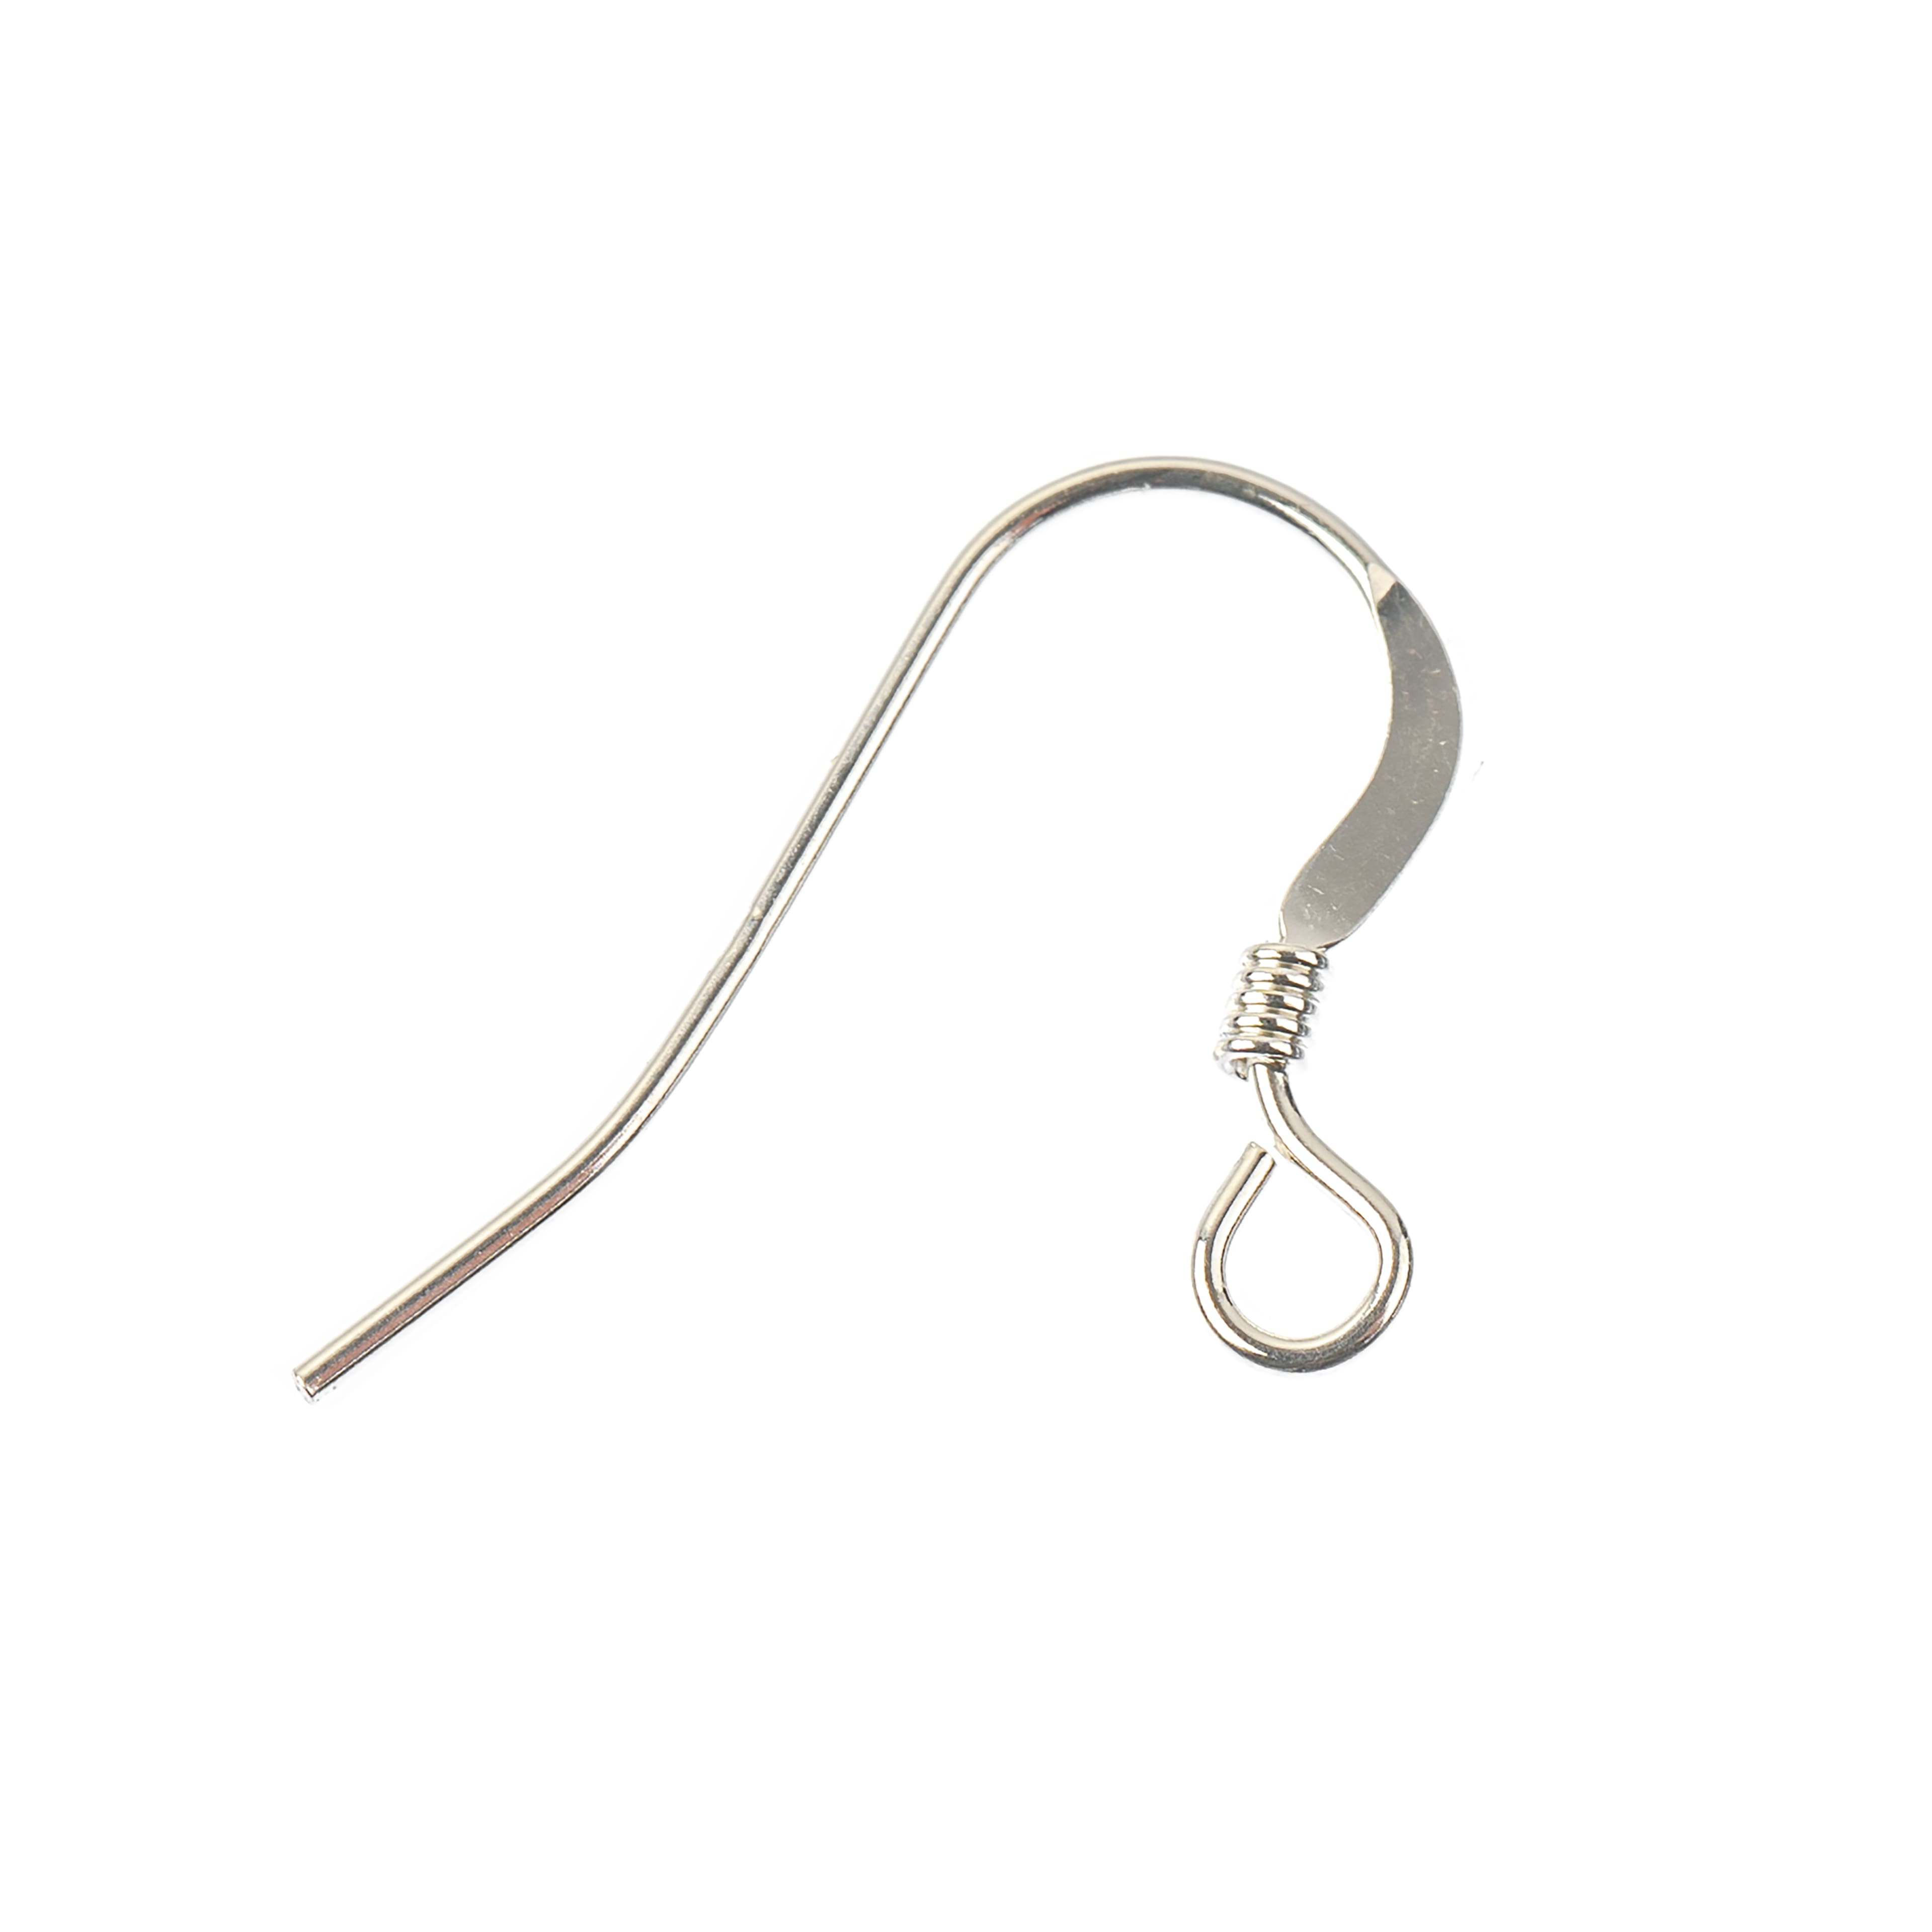 John Bead Stainless Steel Earring Fish Hook 10/Pkg-19mm